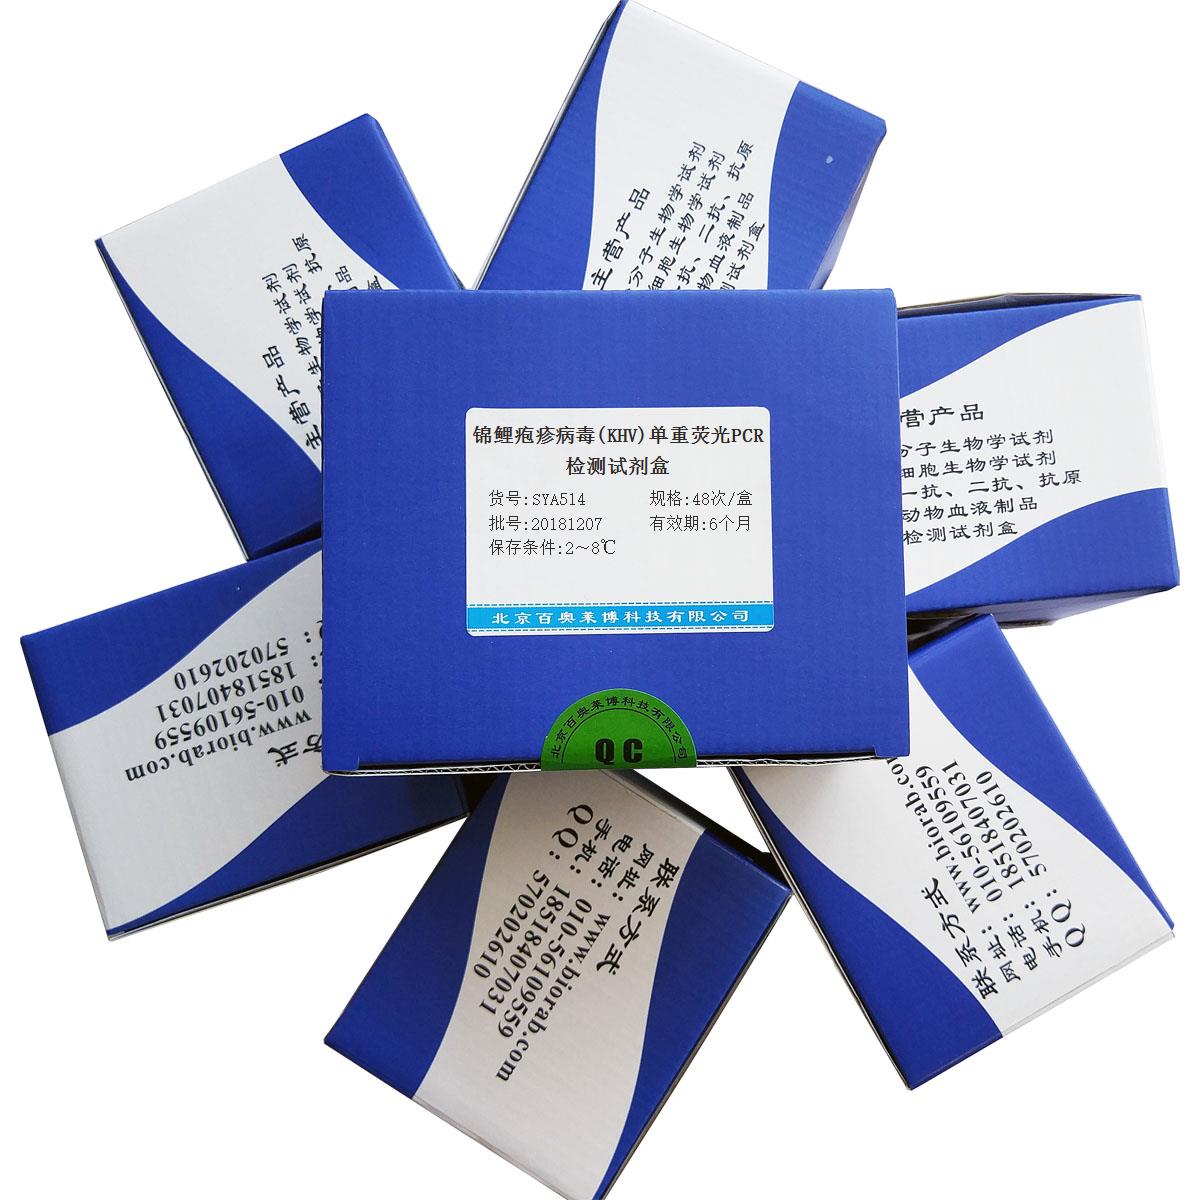 锦鲤疱疹病毒(KHV)单重荧光PCR检测试剂盒